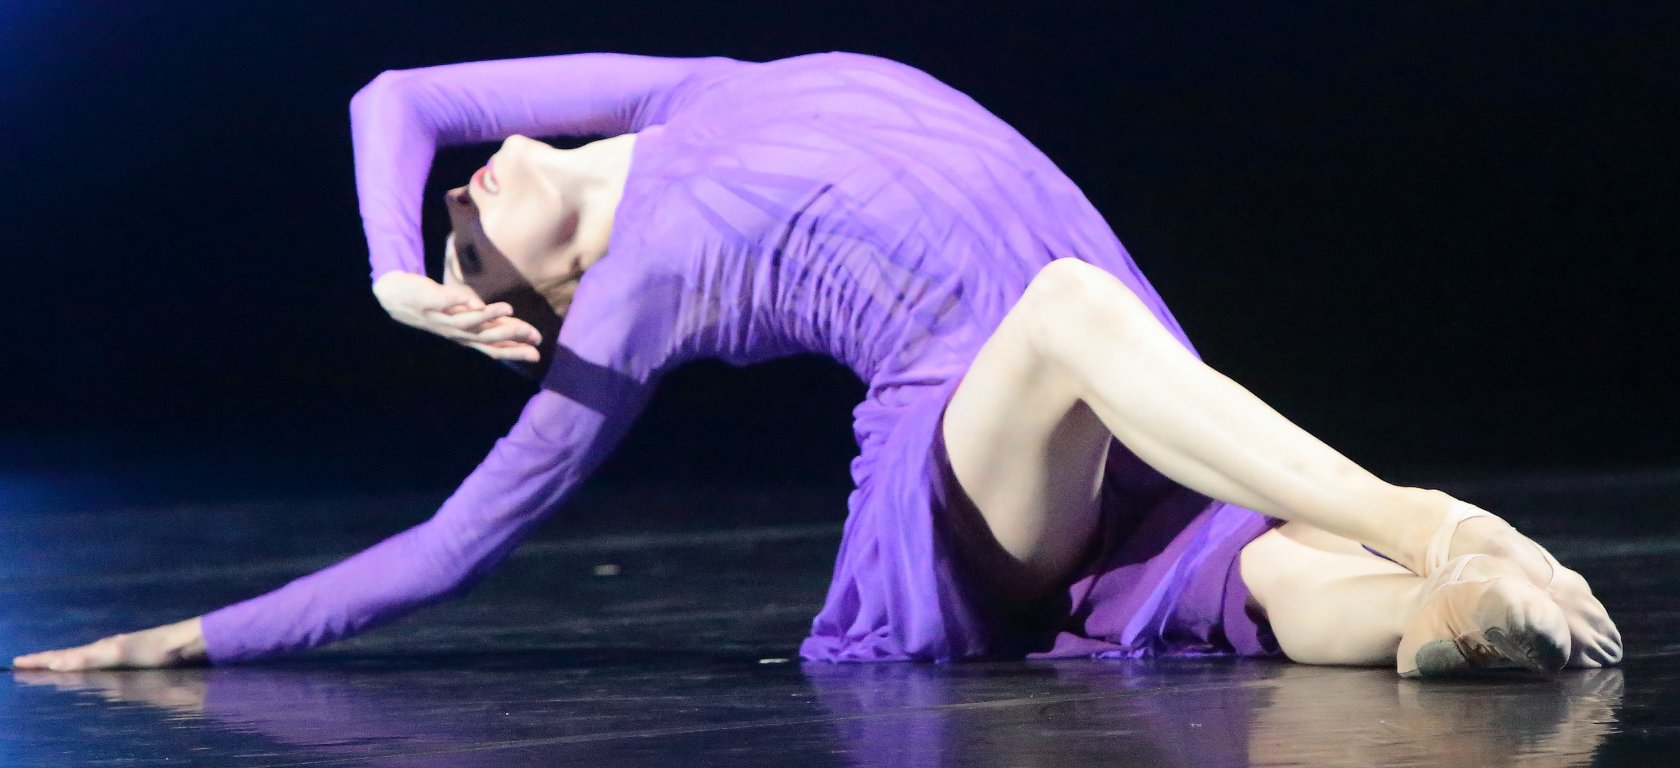 Захарова, великолепная танцовщица, впечатляет своей формой